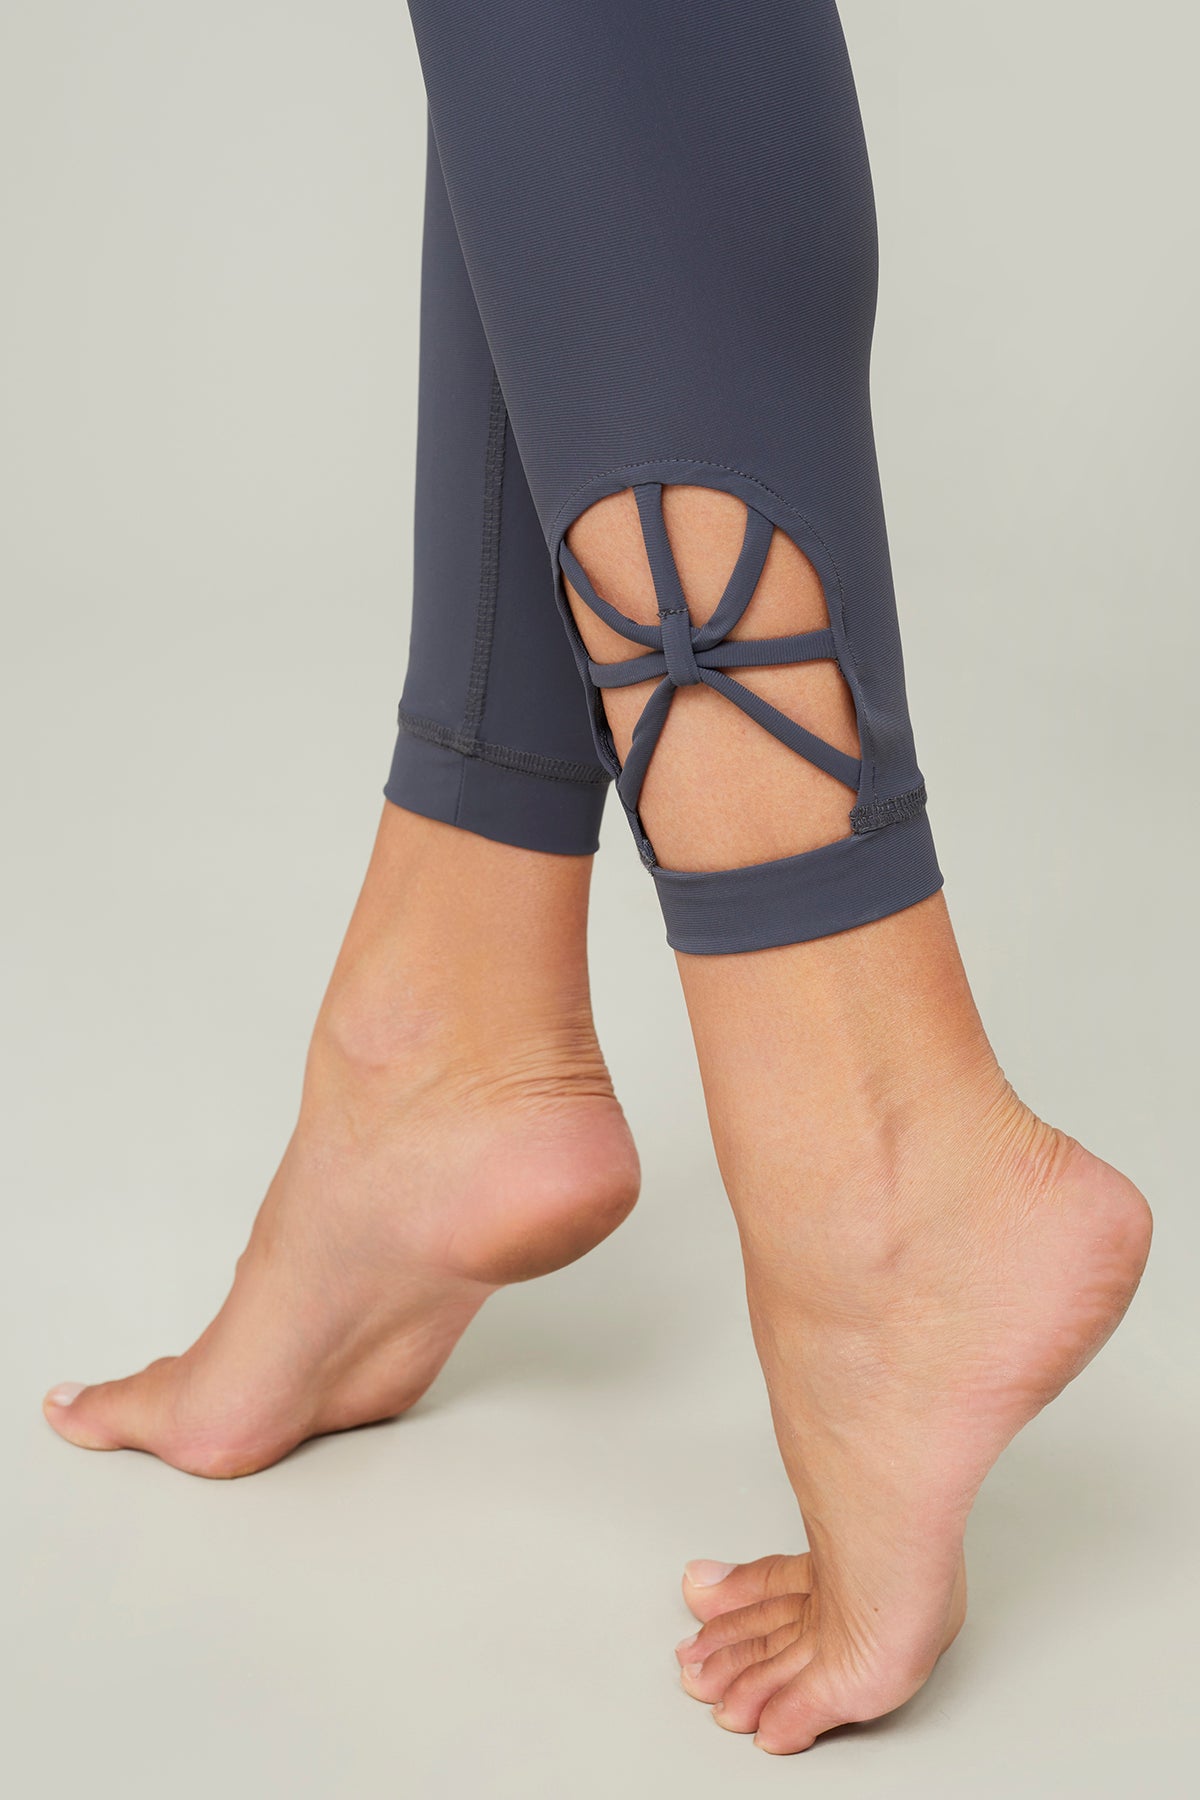 Mandala Spider Legging for women in the color New York